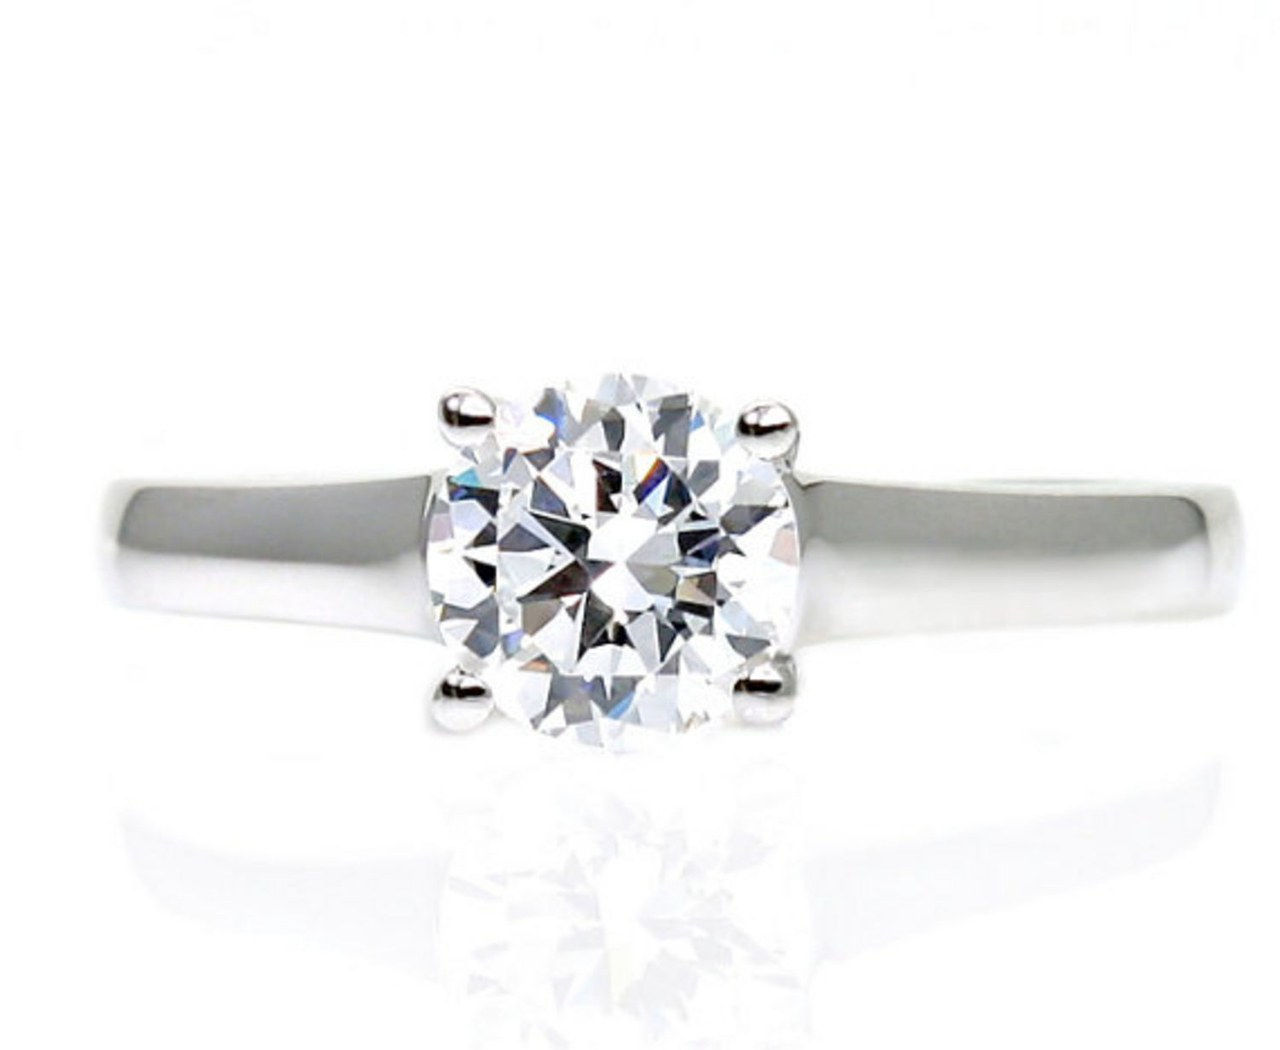 5 lauren conrad engagement ring william tell celebrity weddings 1013